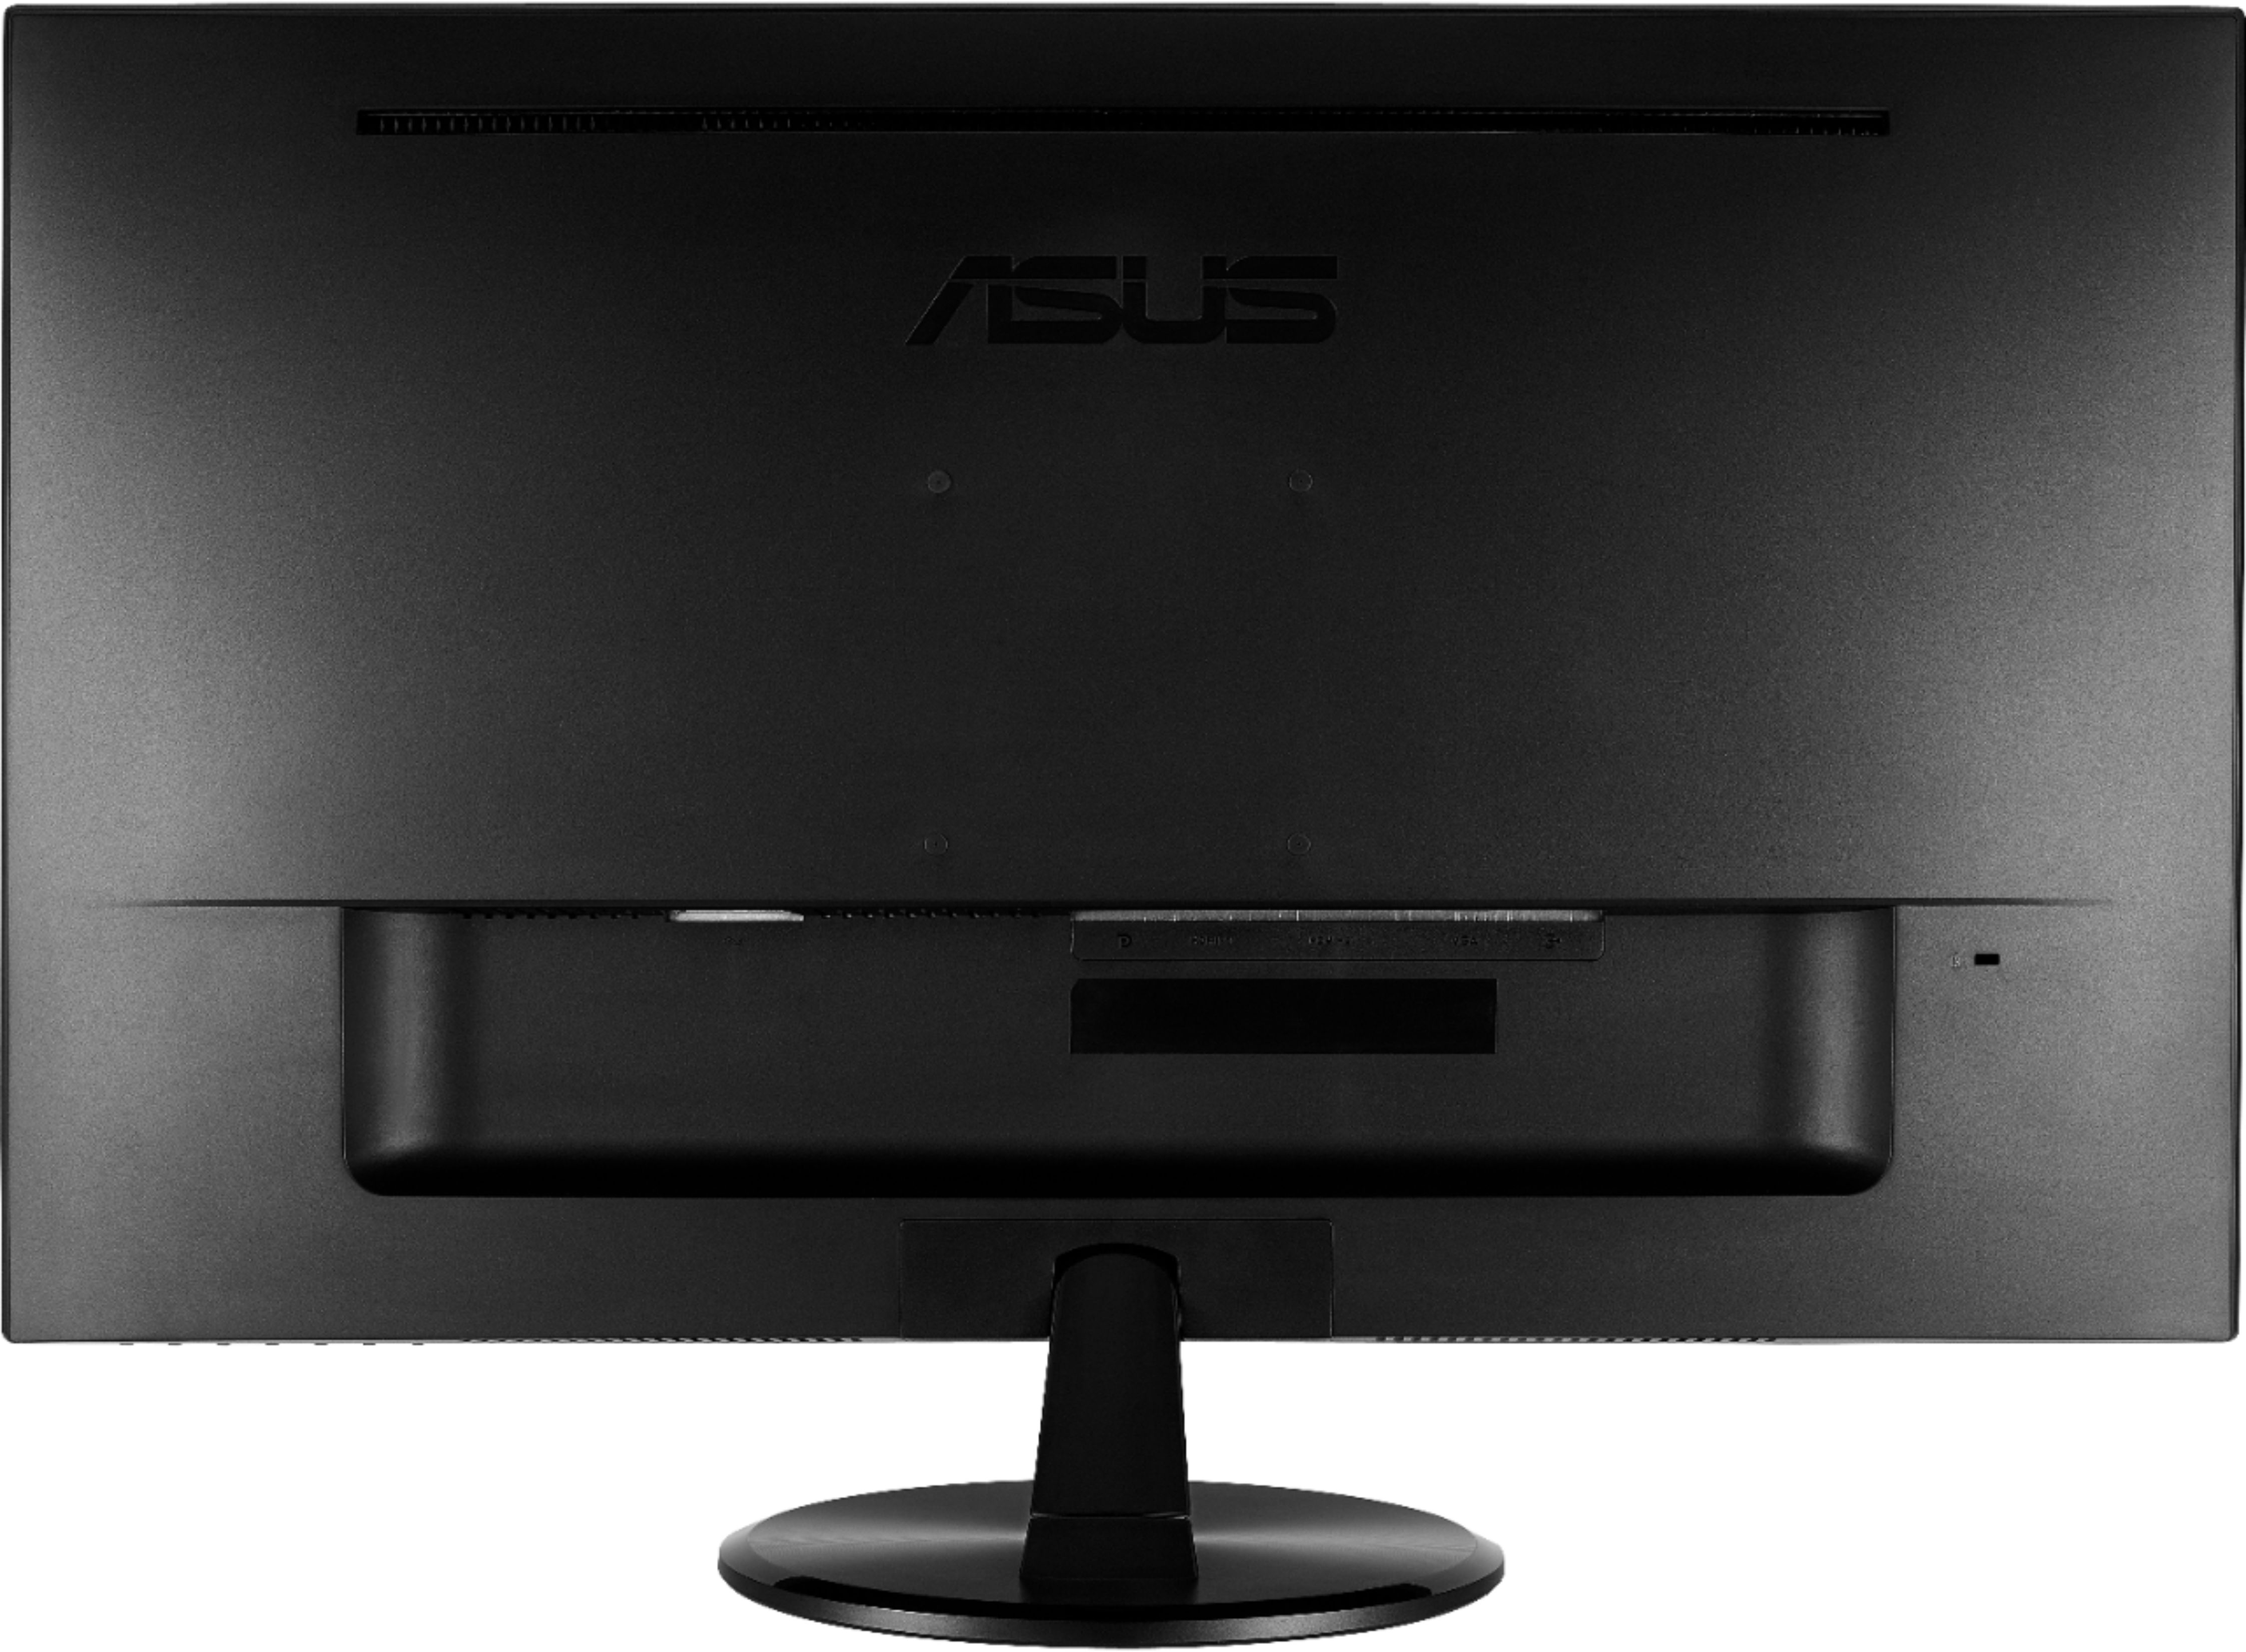 Back View: ASUS - VP278QG 27" LED FHD FreeSync Monitor (HDMI, VGA) - Black